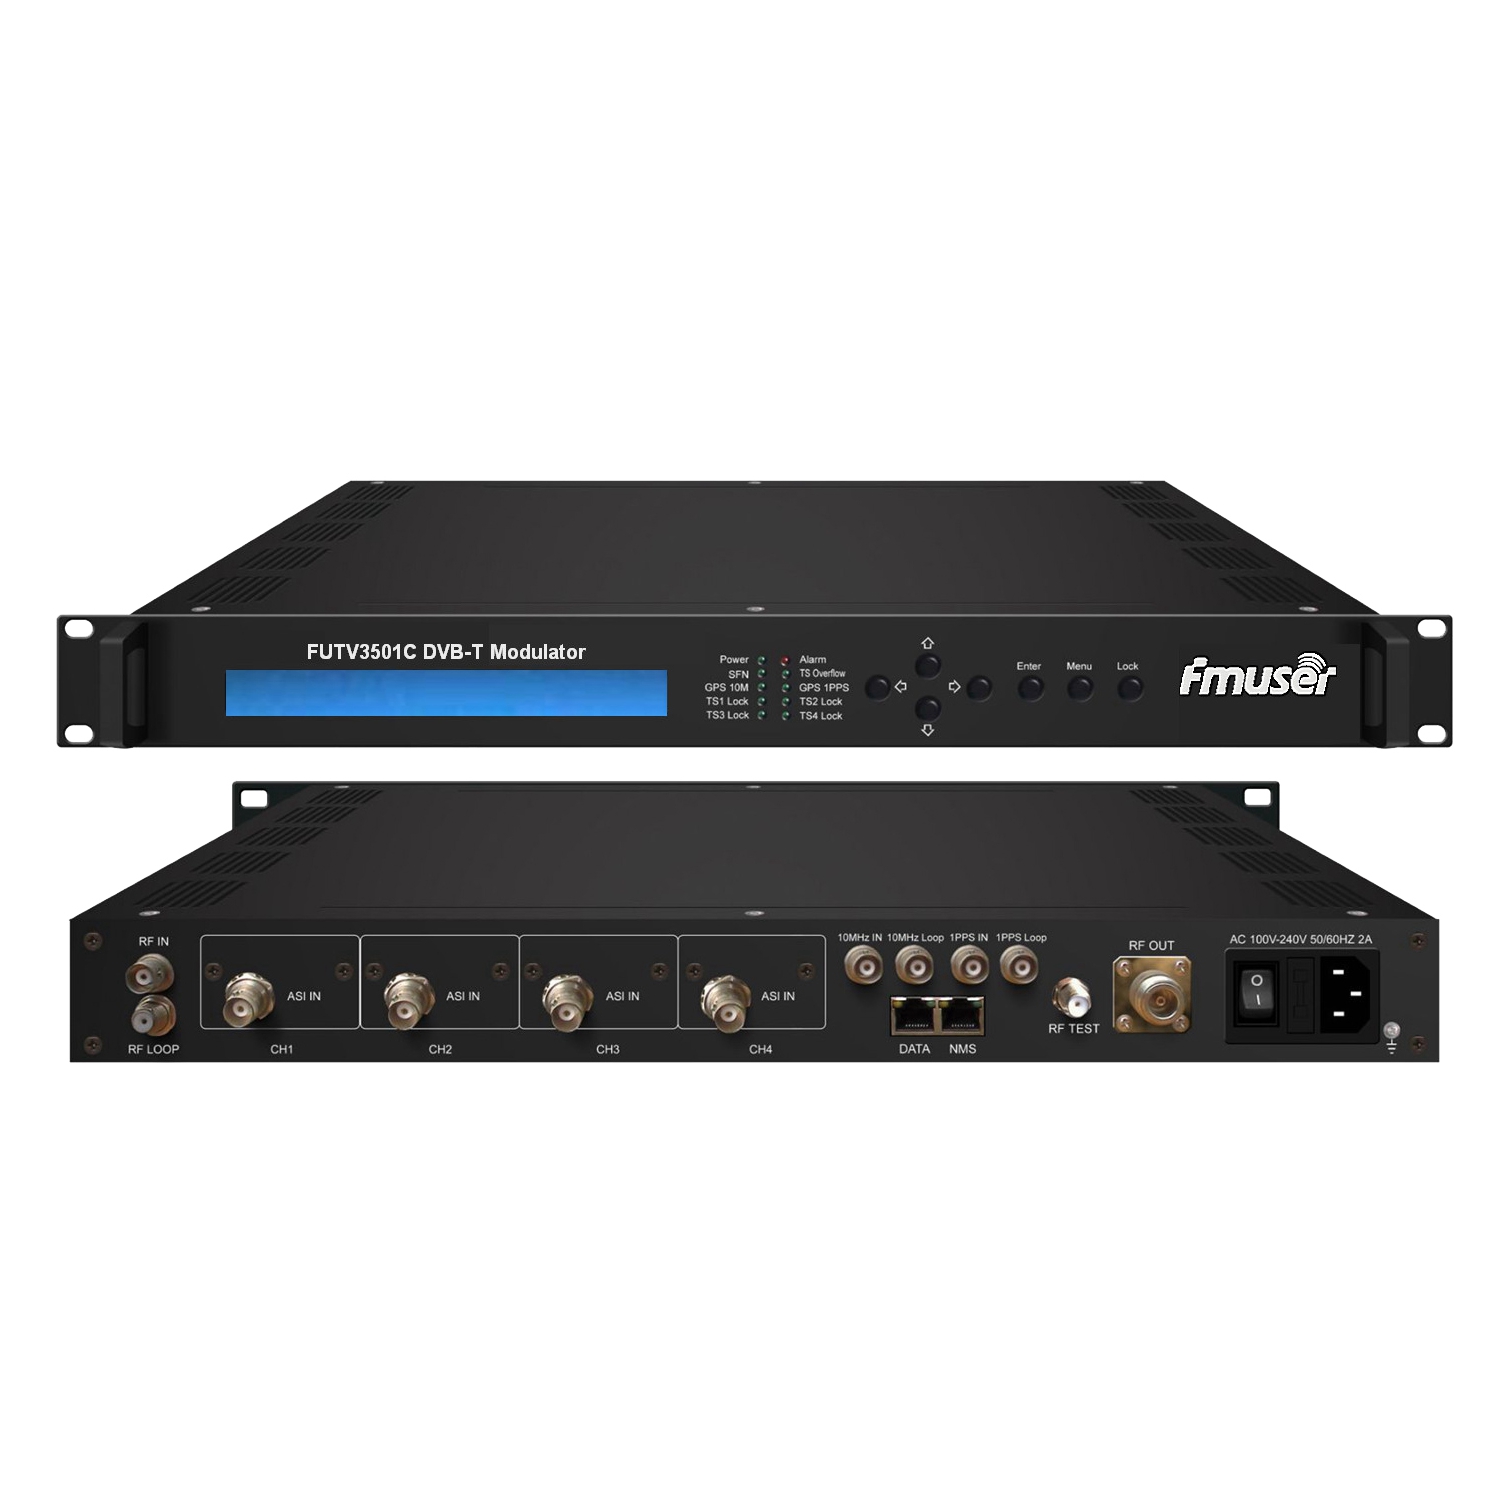 FMUSER FUTV3501C DVB-T المغير (4 * ASI في، 1 * RF DPD بها، DVB-T قياسي) مع جهاز التحكم عن بعد